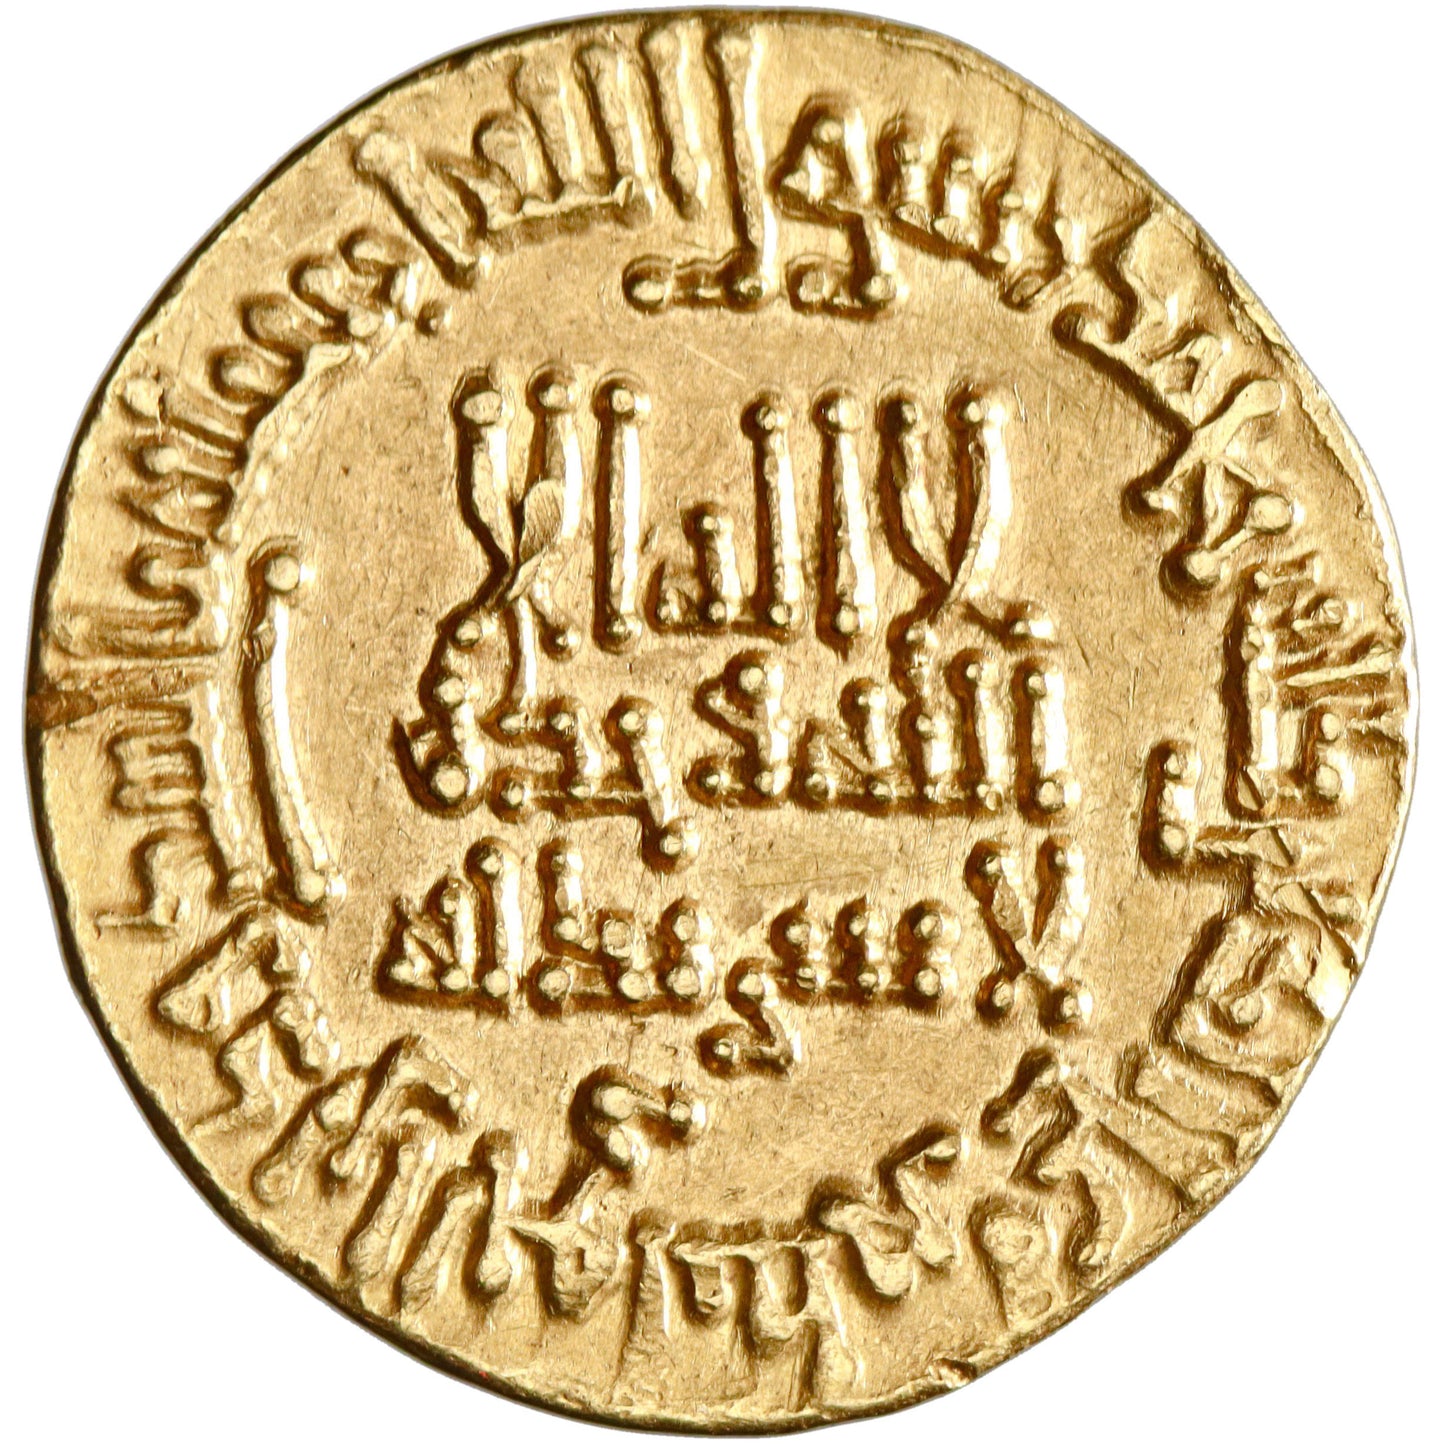 Abbasid, al-Ma'mun 'Abd Allah, gold dinar, AH 196, "lil-khalifa al-imam" type